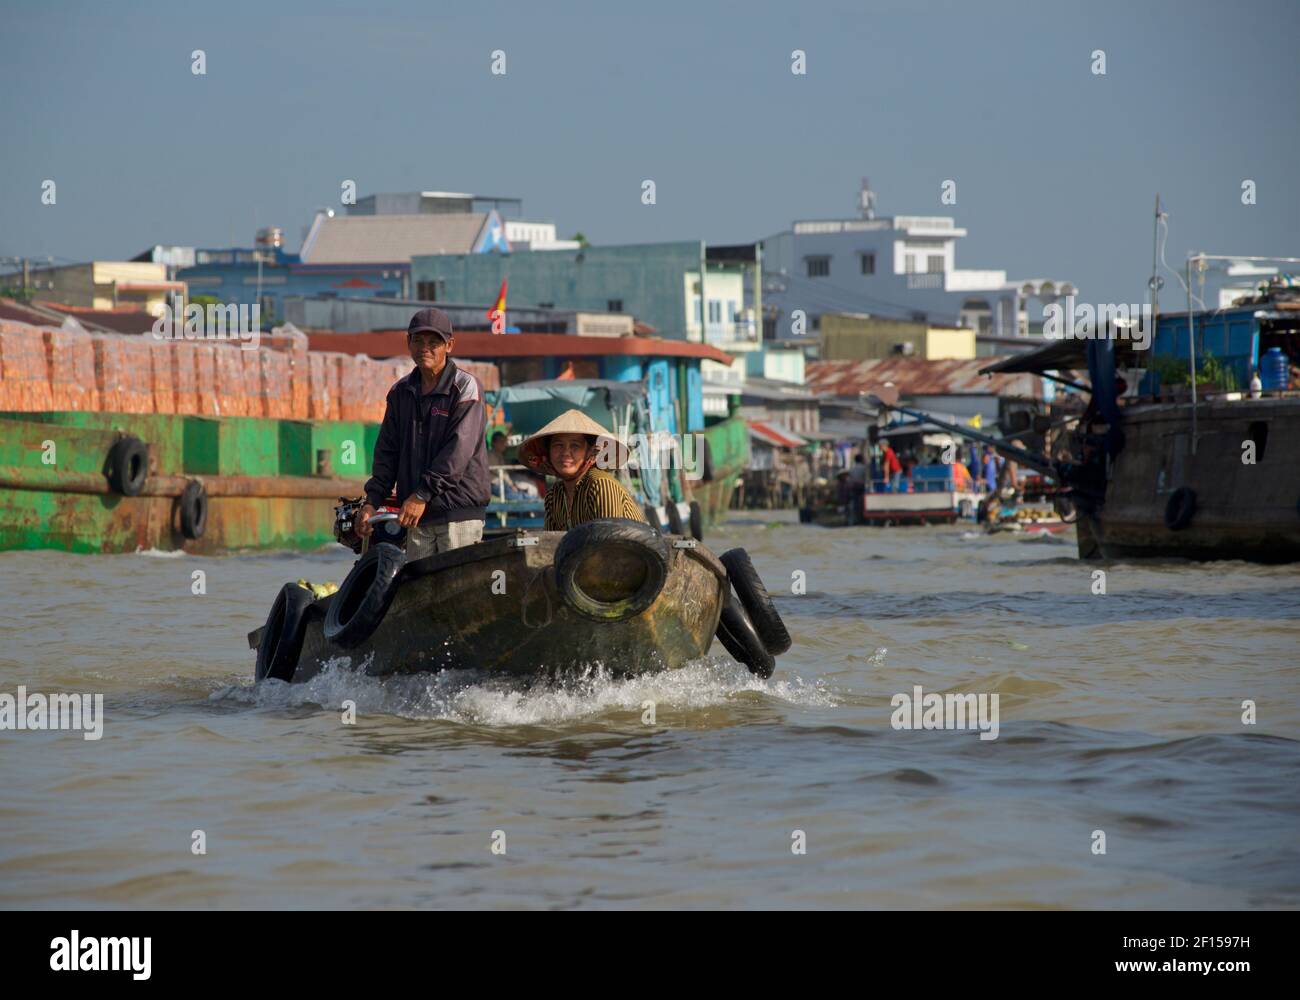 Bateaux fluviaux au marché flottant de Cai rang, delta du Mékong, Vietnam Banque D'Images